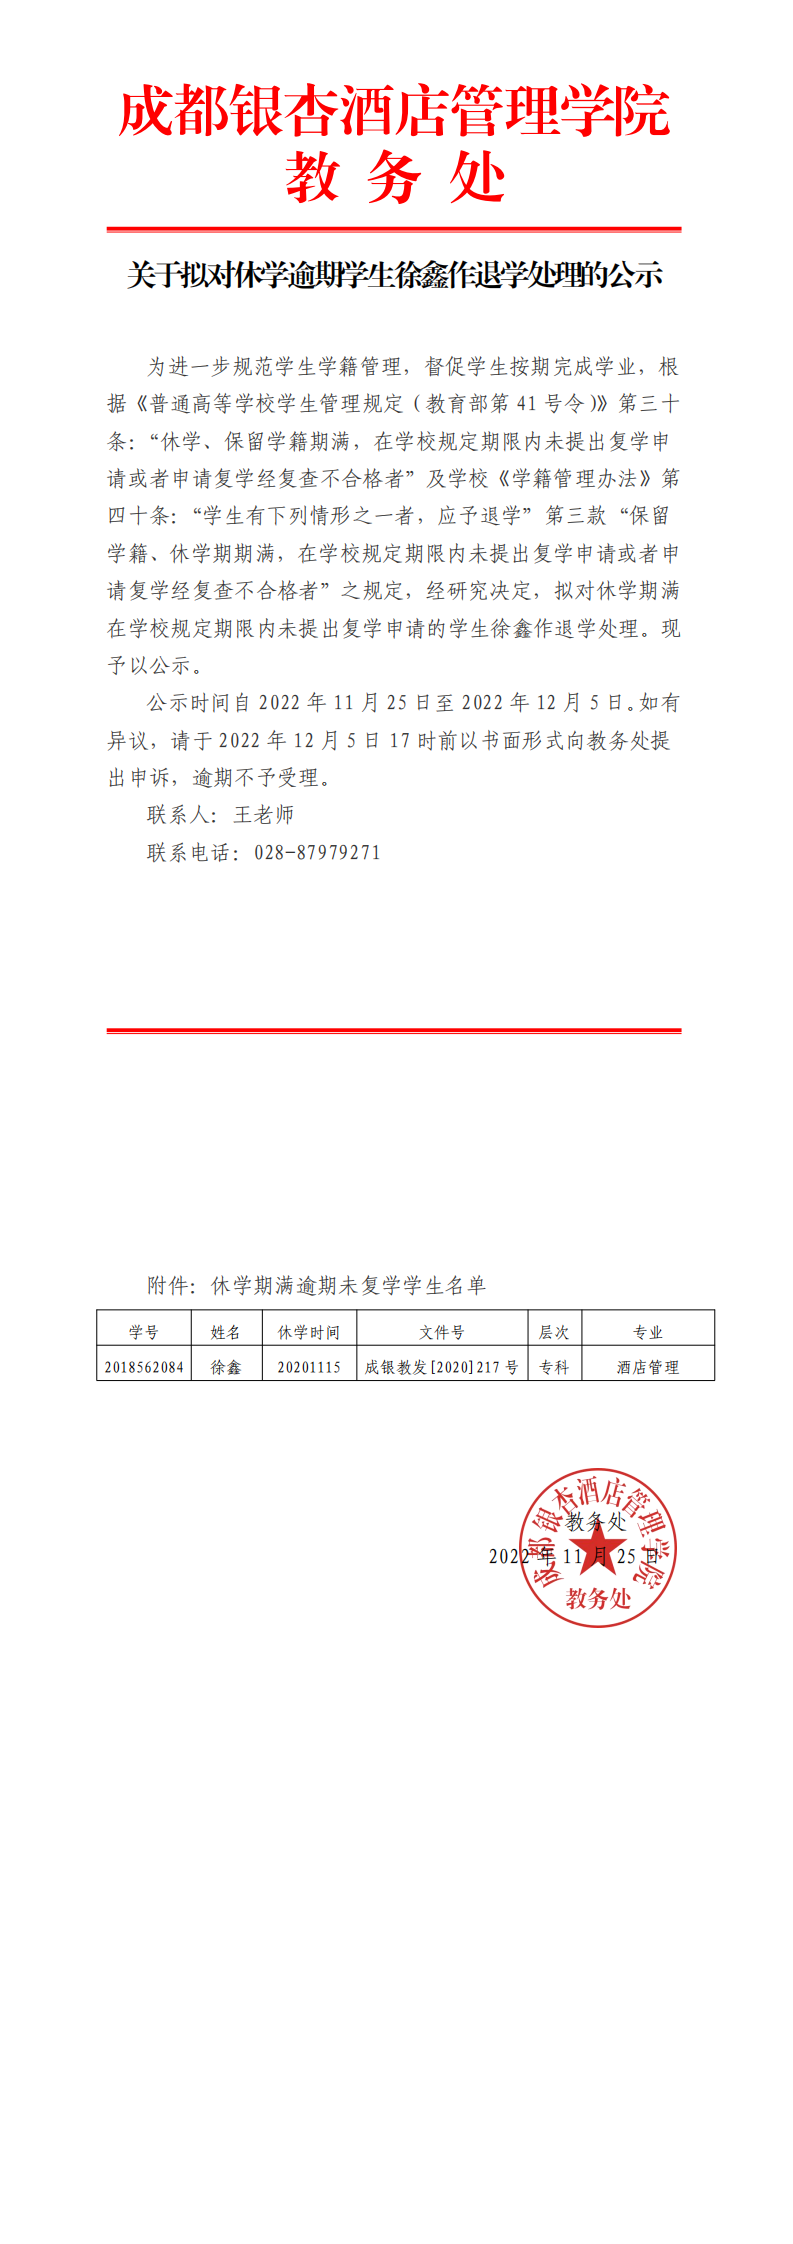 关于拟对休学逾期学生徐鑫作退学处理的公示_0.png